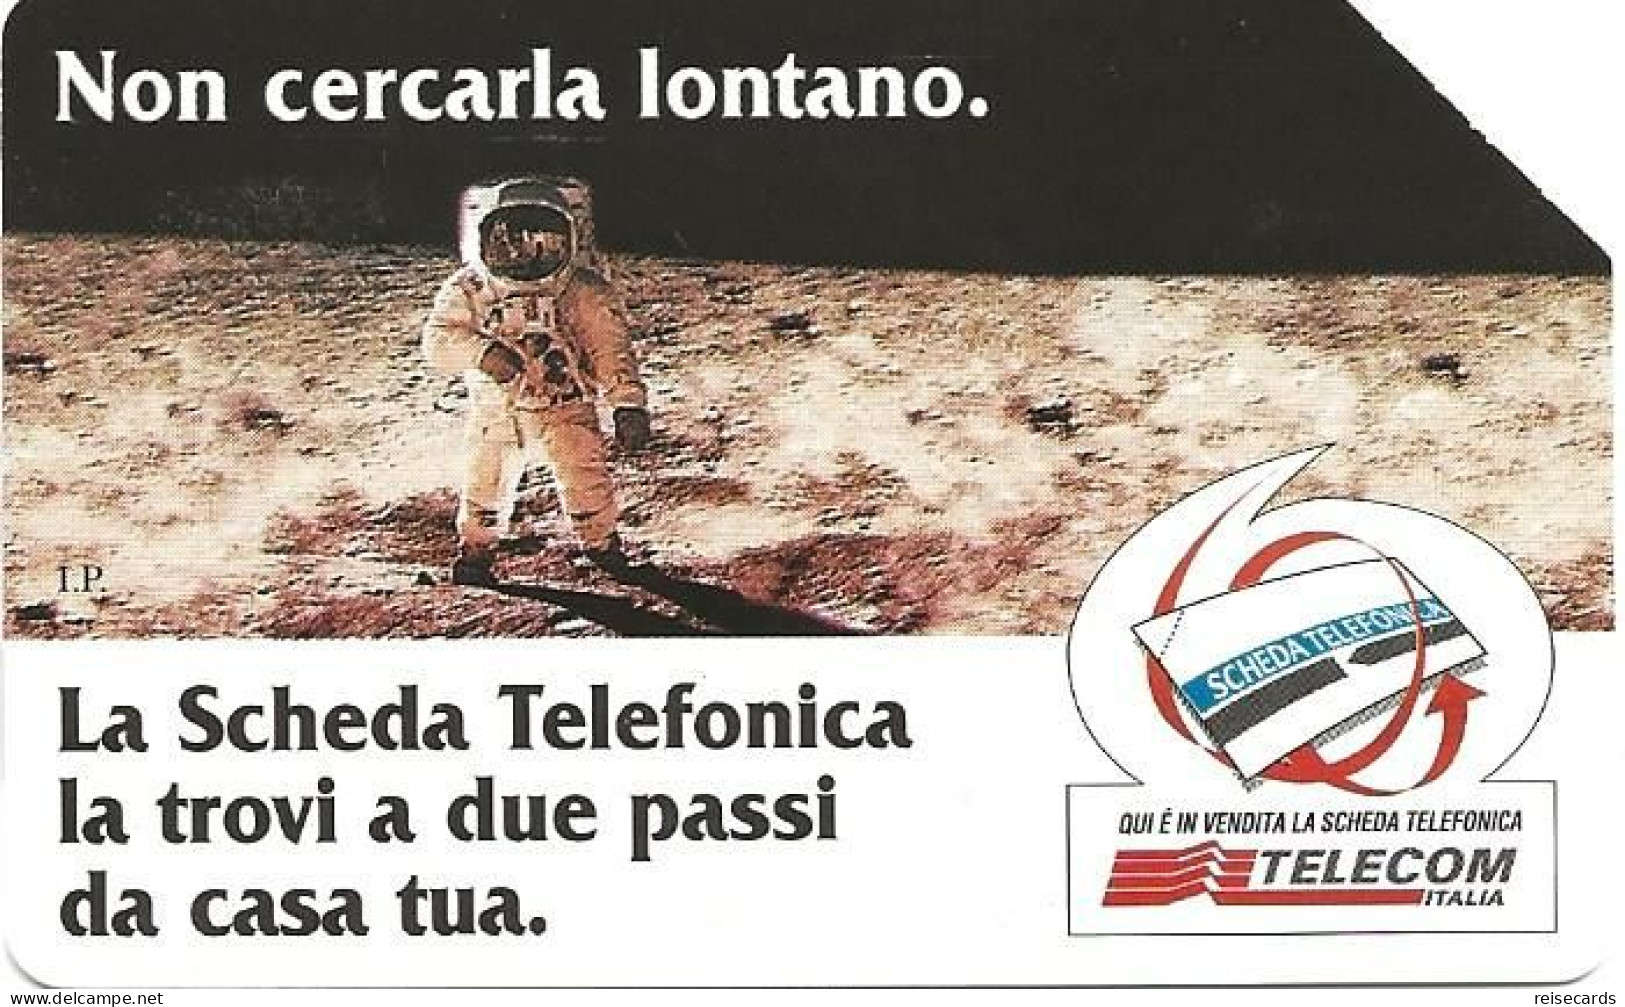 Italy: Telecom Italia - La Scheda Telefonica, Non Cercarla Lontano - Pubbliche Pubblicitarie